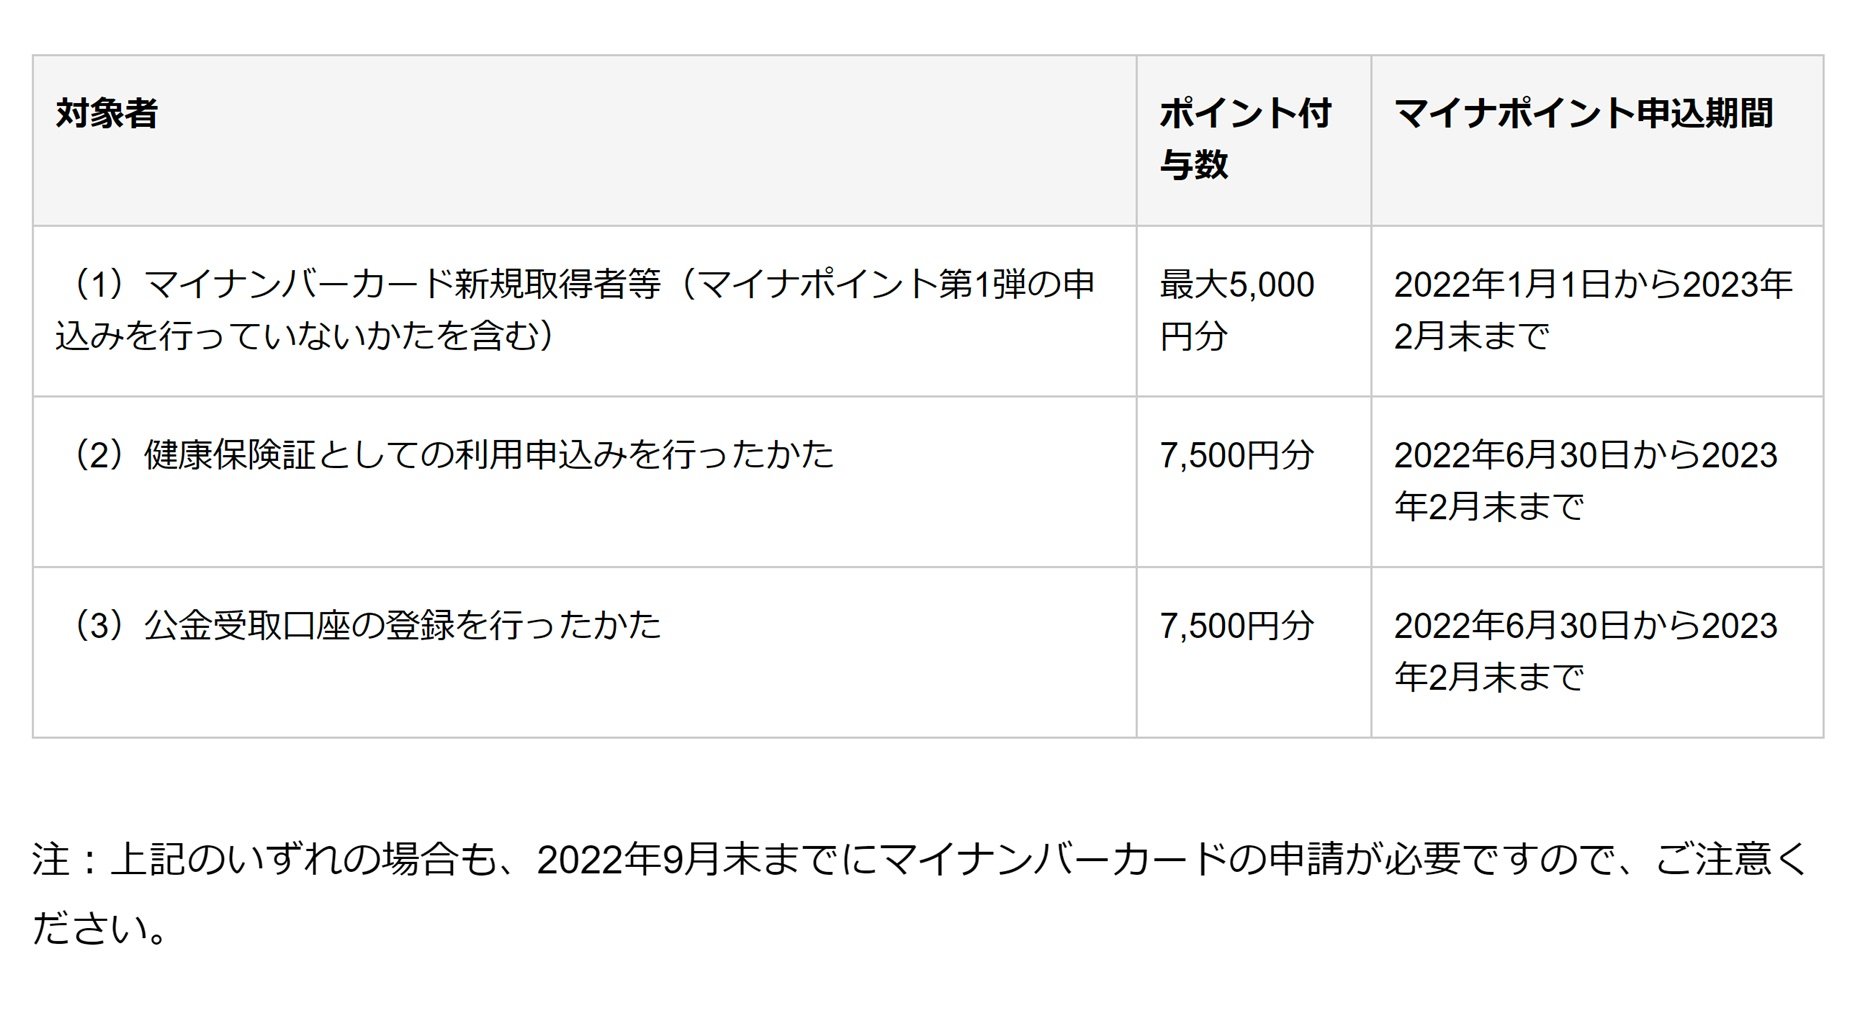 マイナポイント事業第2弾、6月30日スタート　1人当たり最大2万円還元